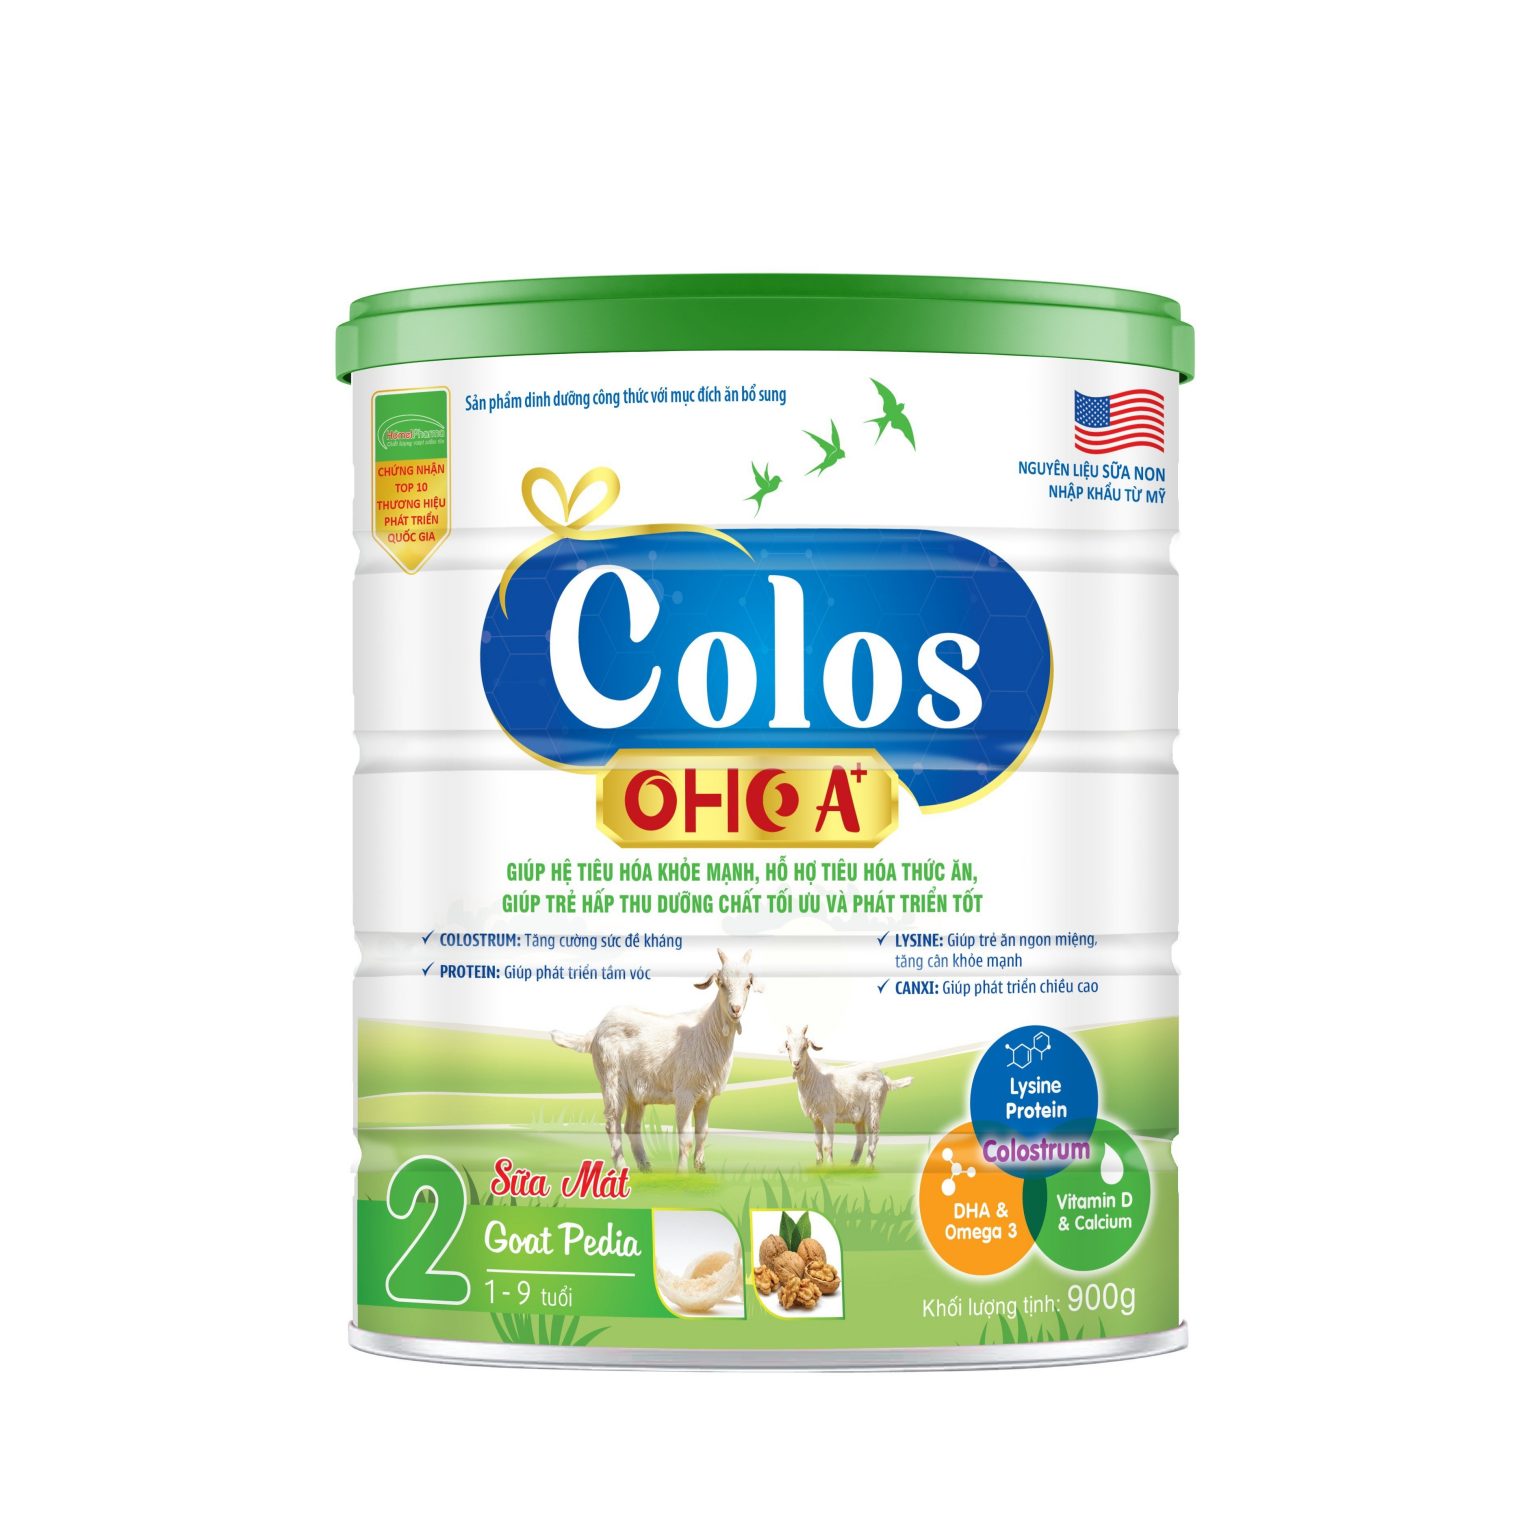 Colos Oho A+ Pedia Goat - Tiêu Hóa Khỏe Mạnh, Hấp Thu Tối Ưu